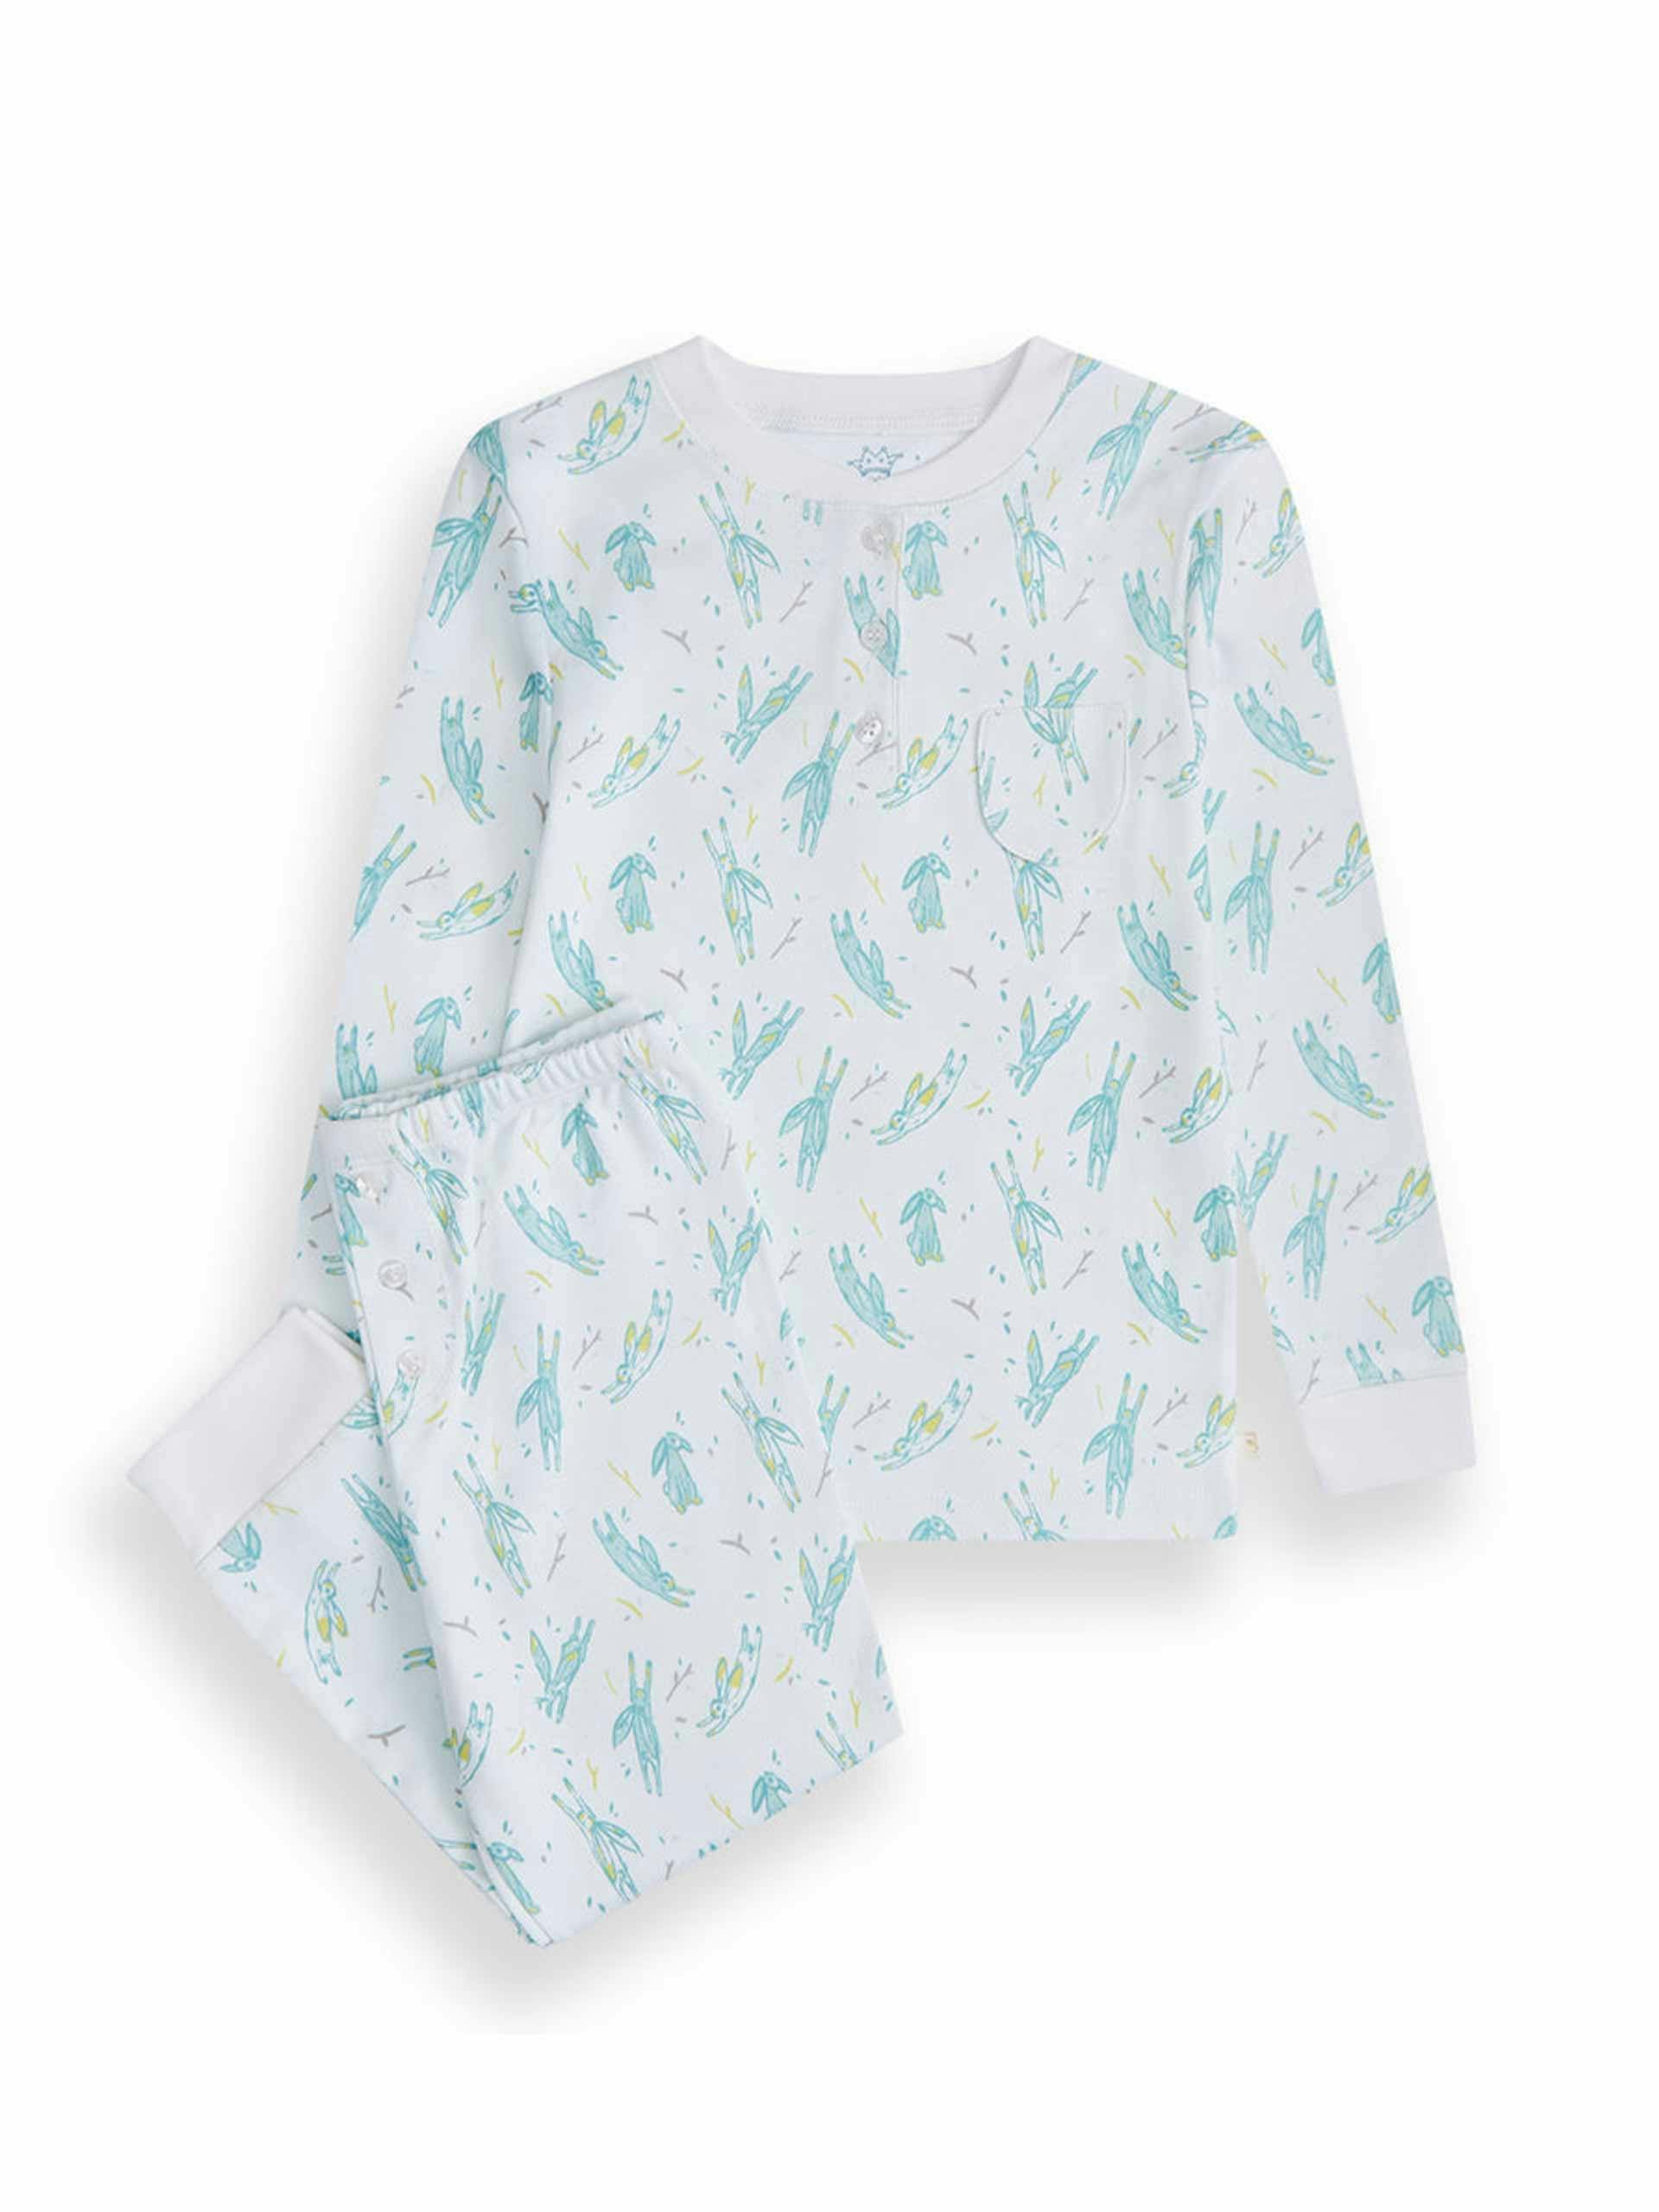 Bunny print pyjama set